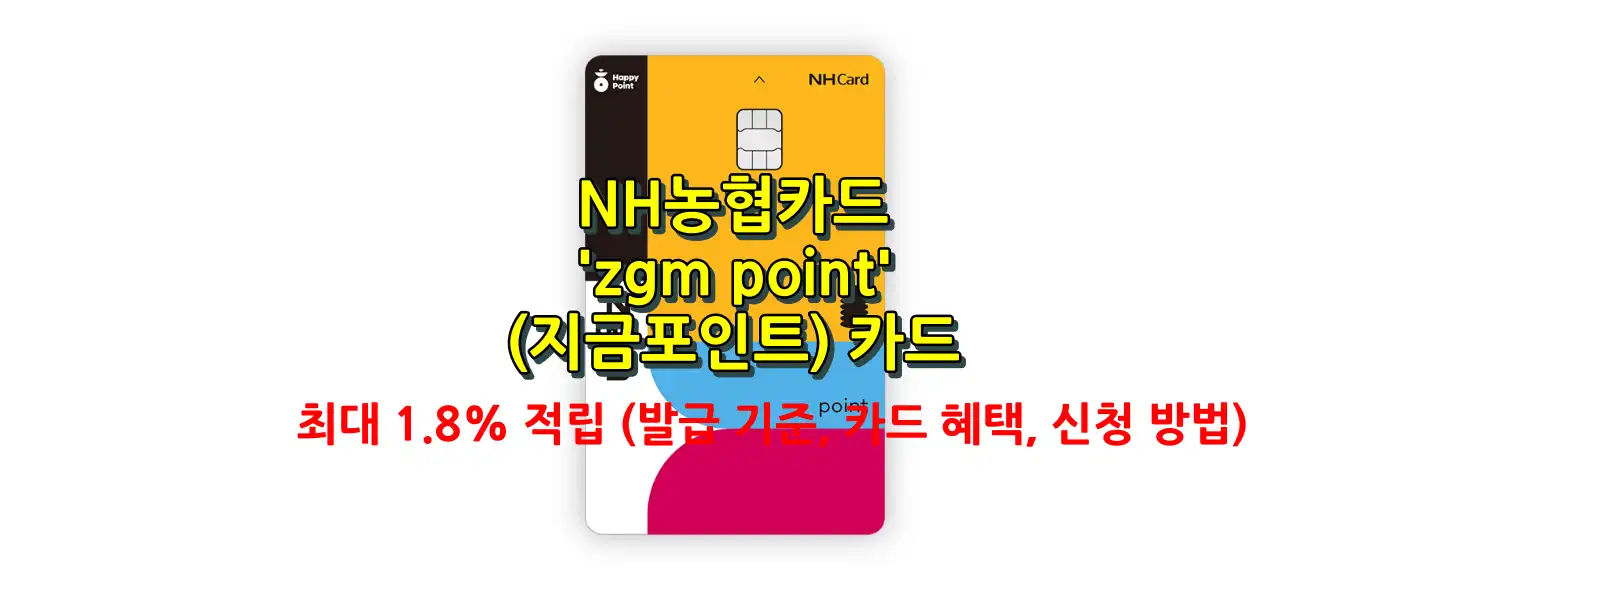 zgm point카드